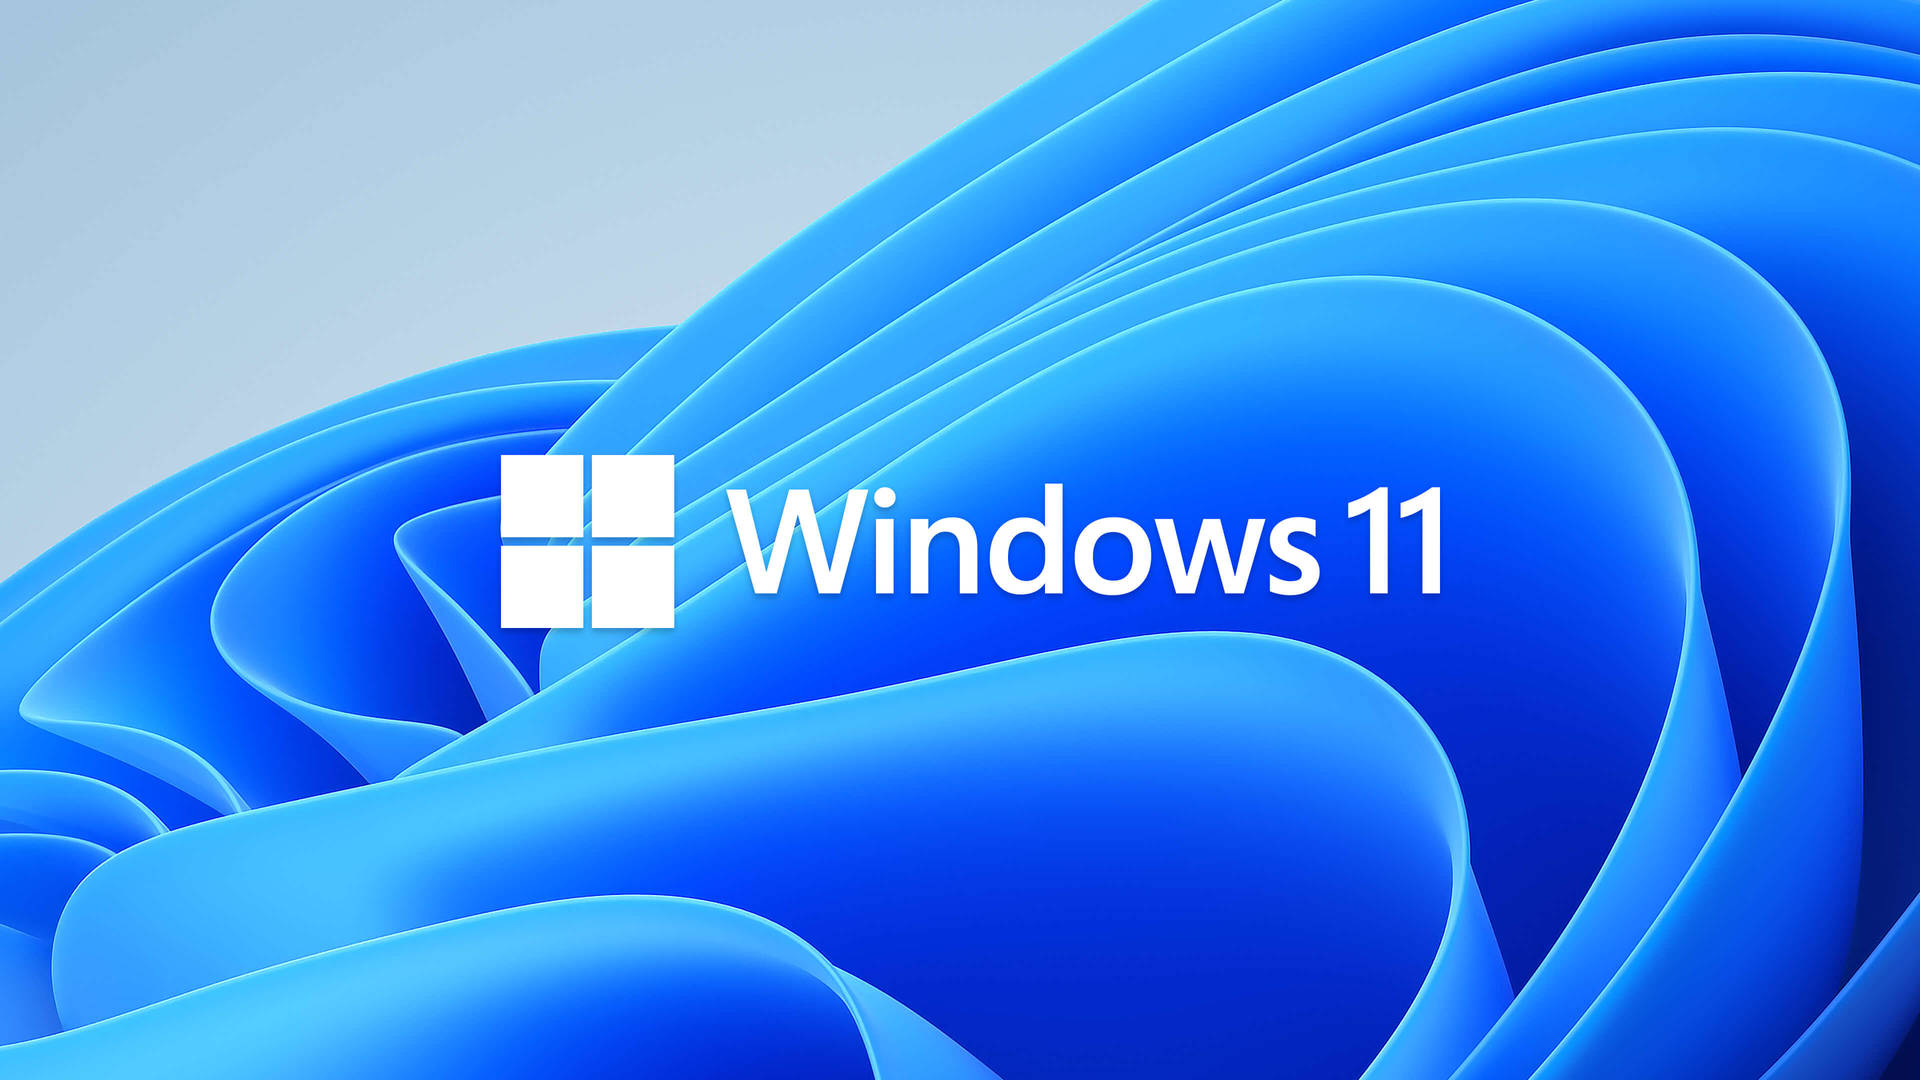 Windows 11 Blue Flower Pattern Background